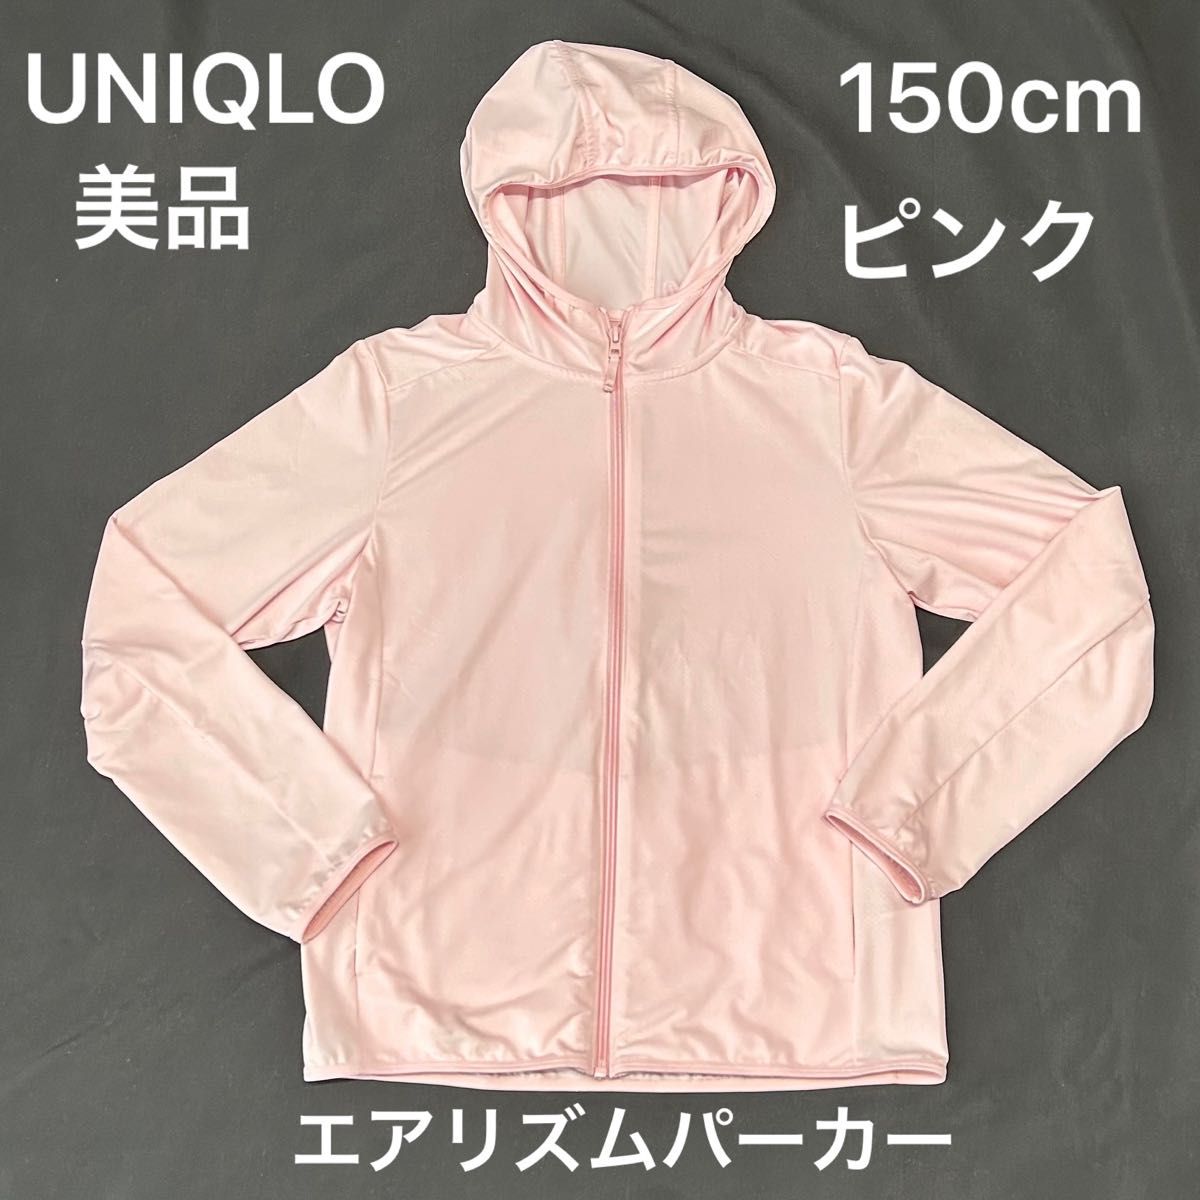 150cm【中古美品】ユニクロ UNIQLO エアリズムパーカー ピンク 長袖 上着 羽織り